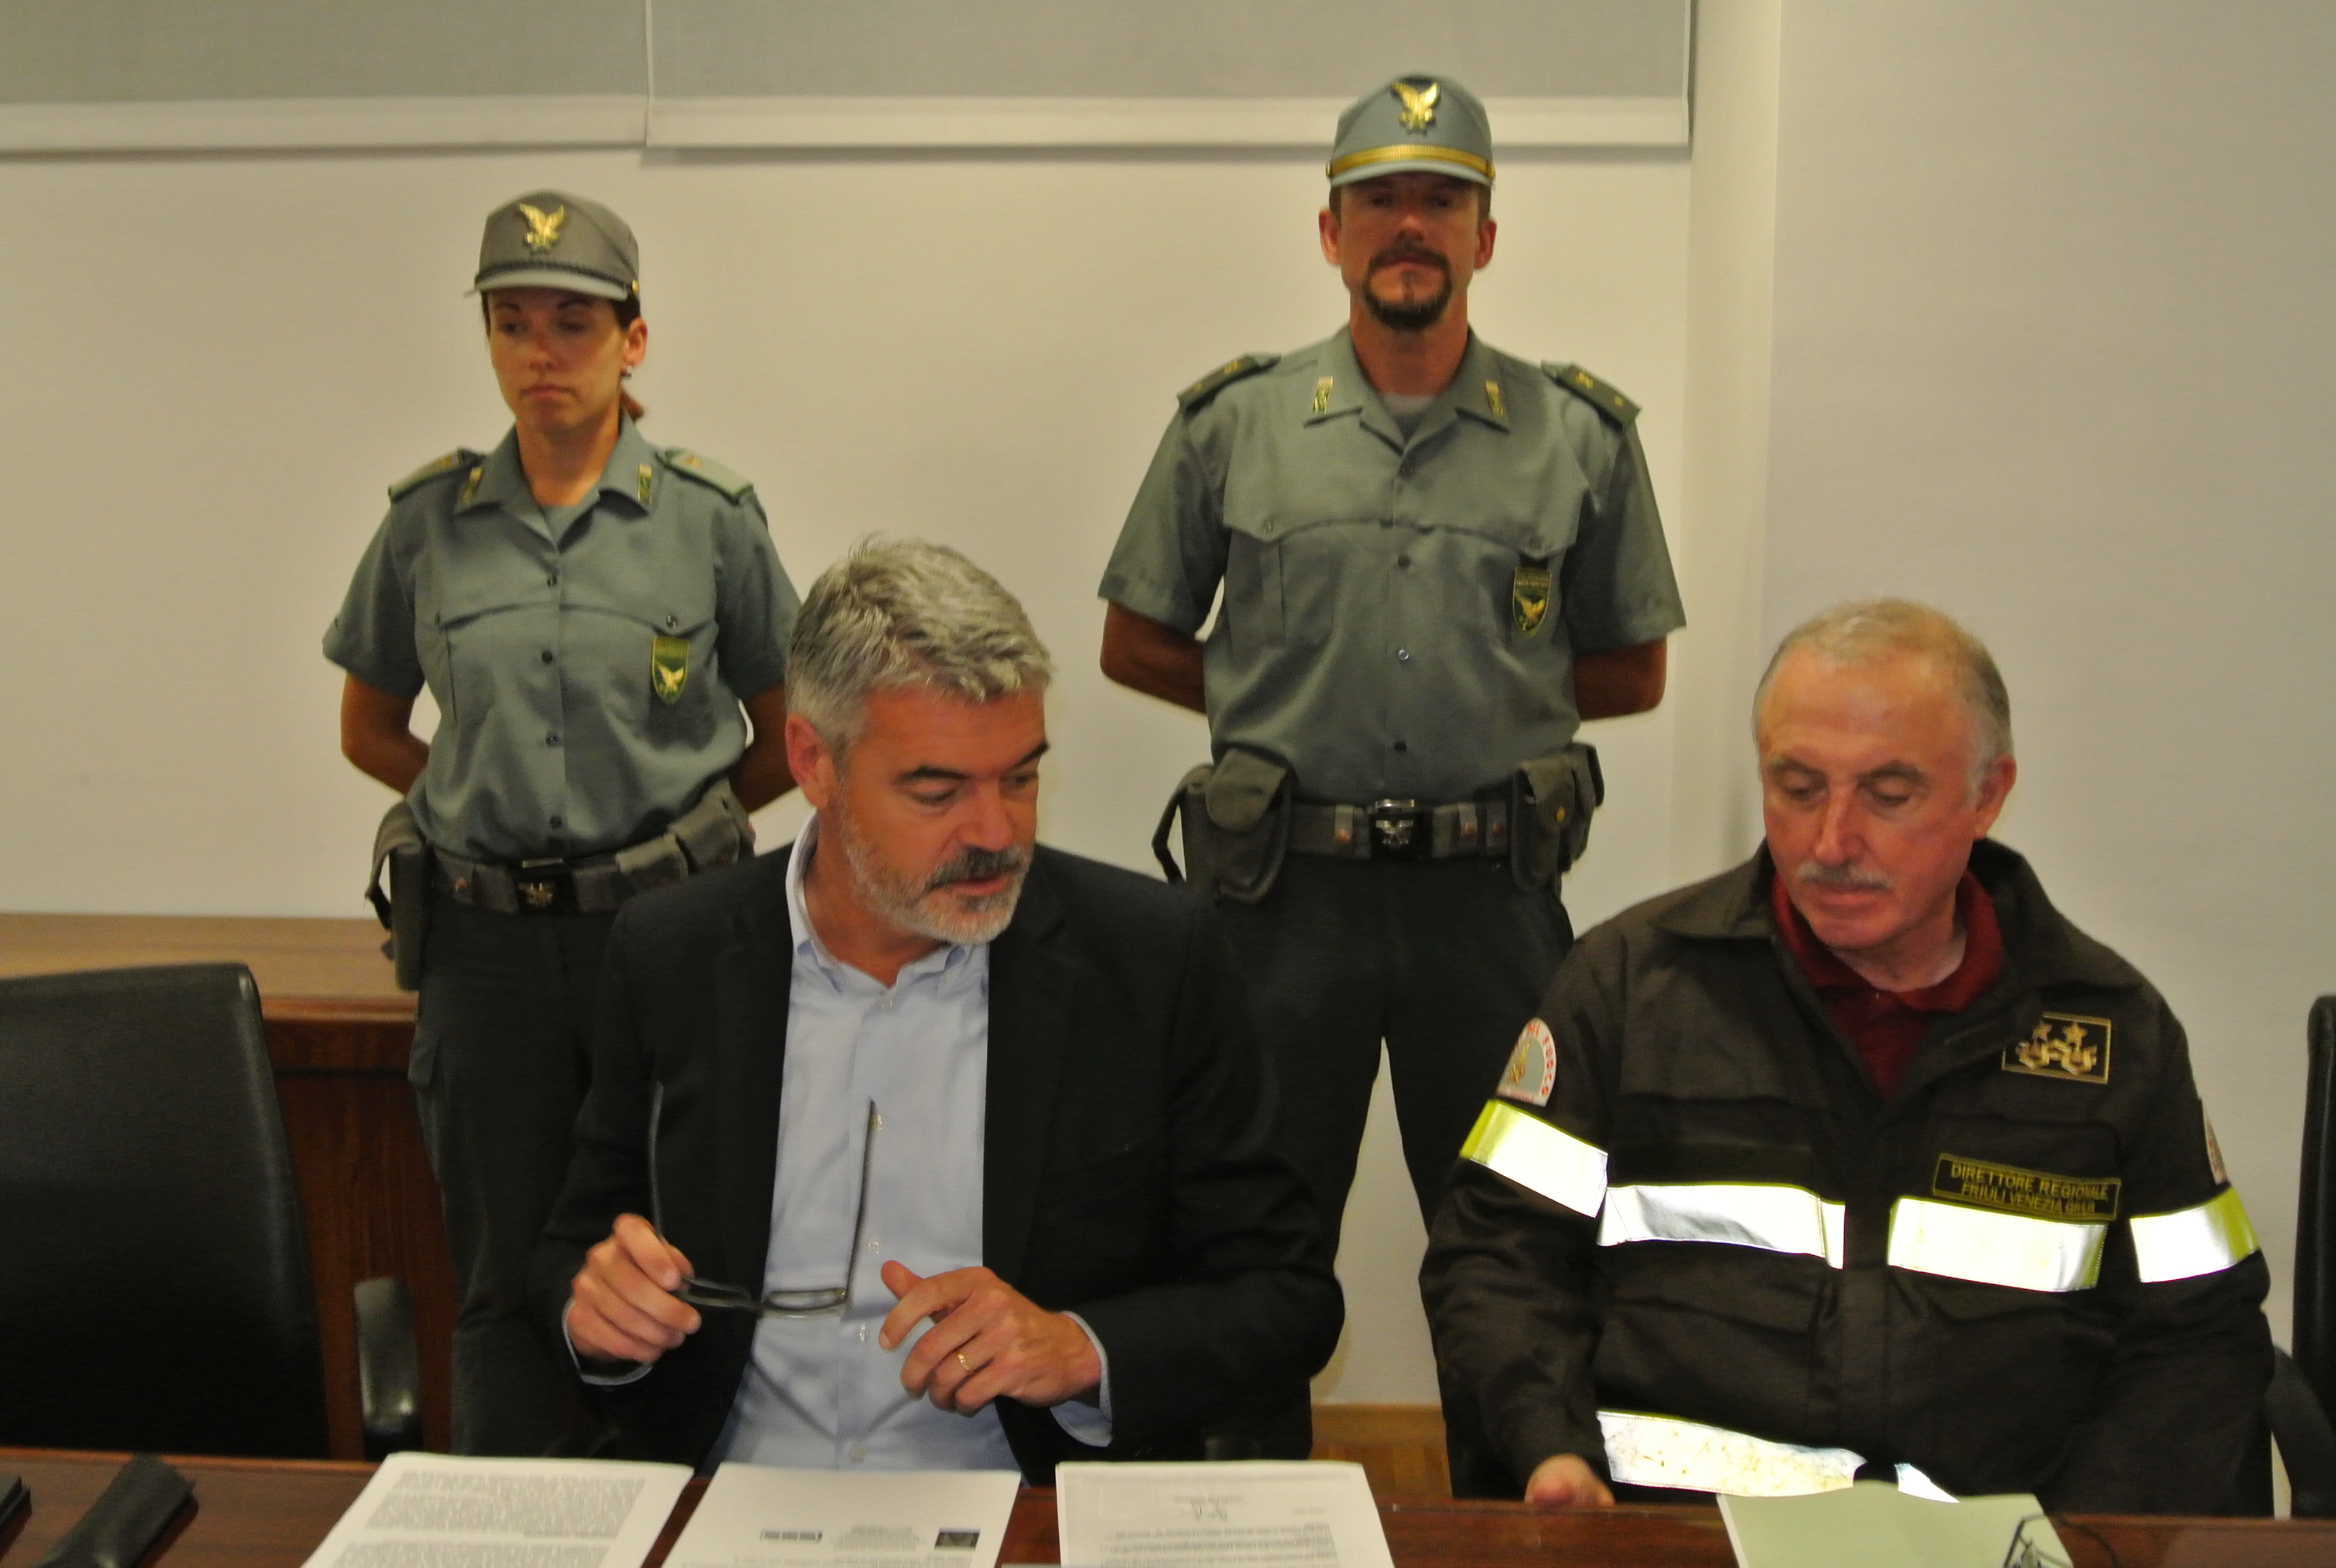 Paolo Panontin (Assessore regionale Protezione civile) e Tolomeo Litterio (comandante regionale Vigili del Fuoco). (Udine, 08/08/13)